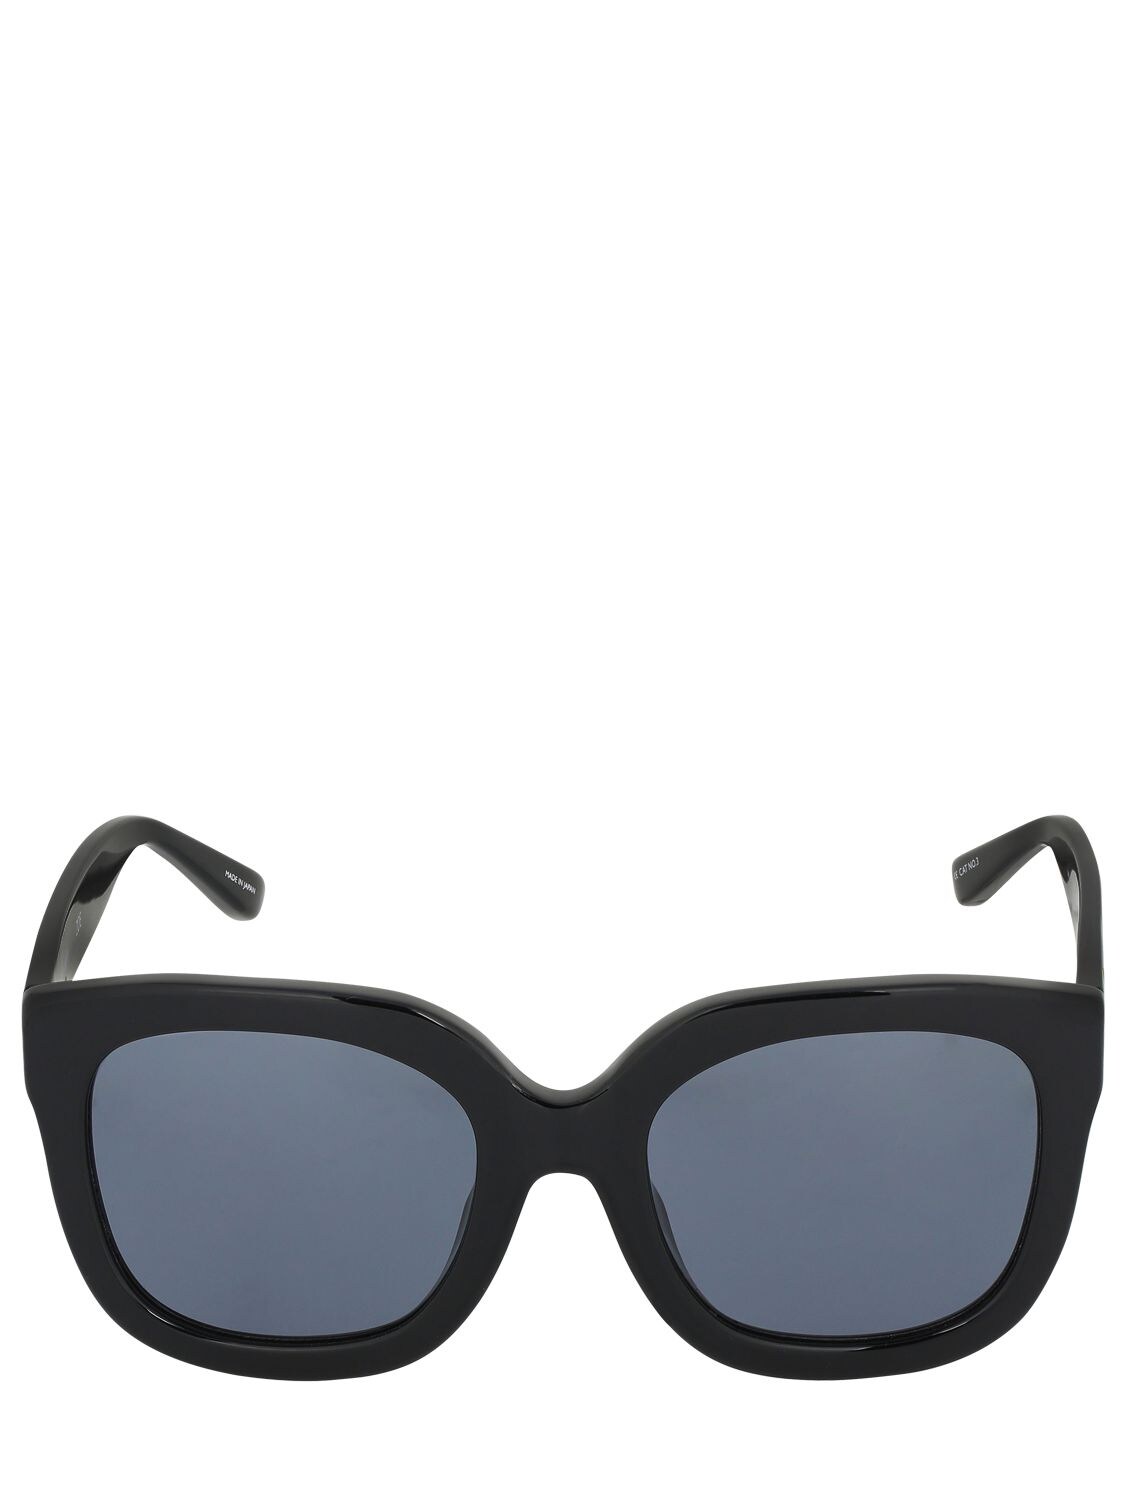 Attico Zoe Oversized Round Acetate Sunglasses In Black,grey